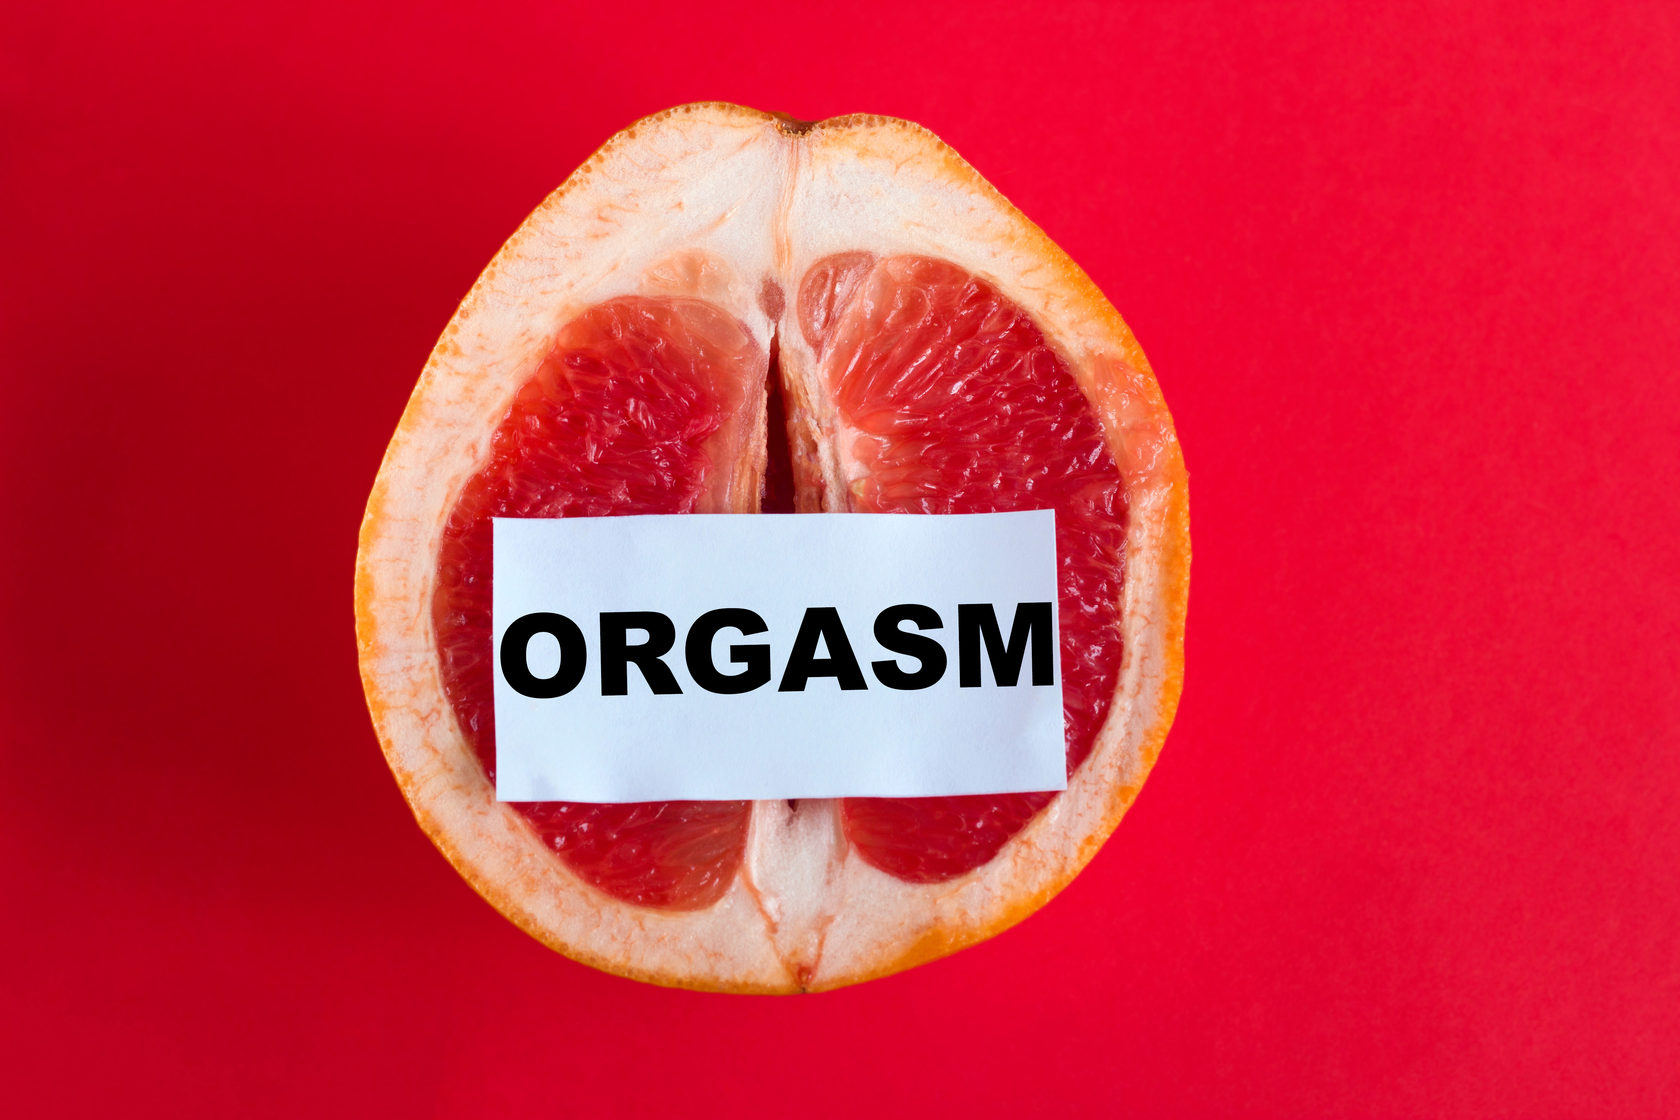 бумашка с надписью orgasm на грейпфруте